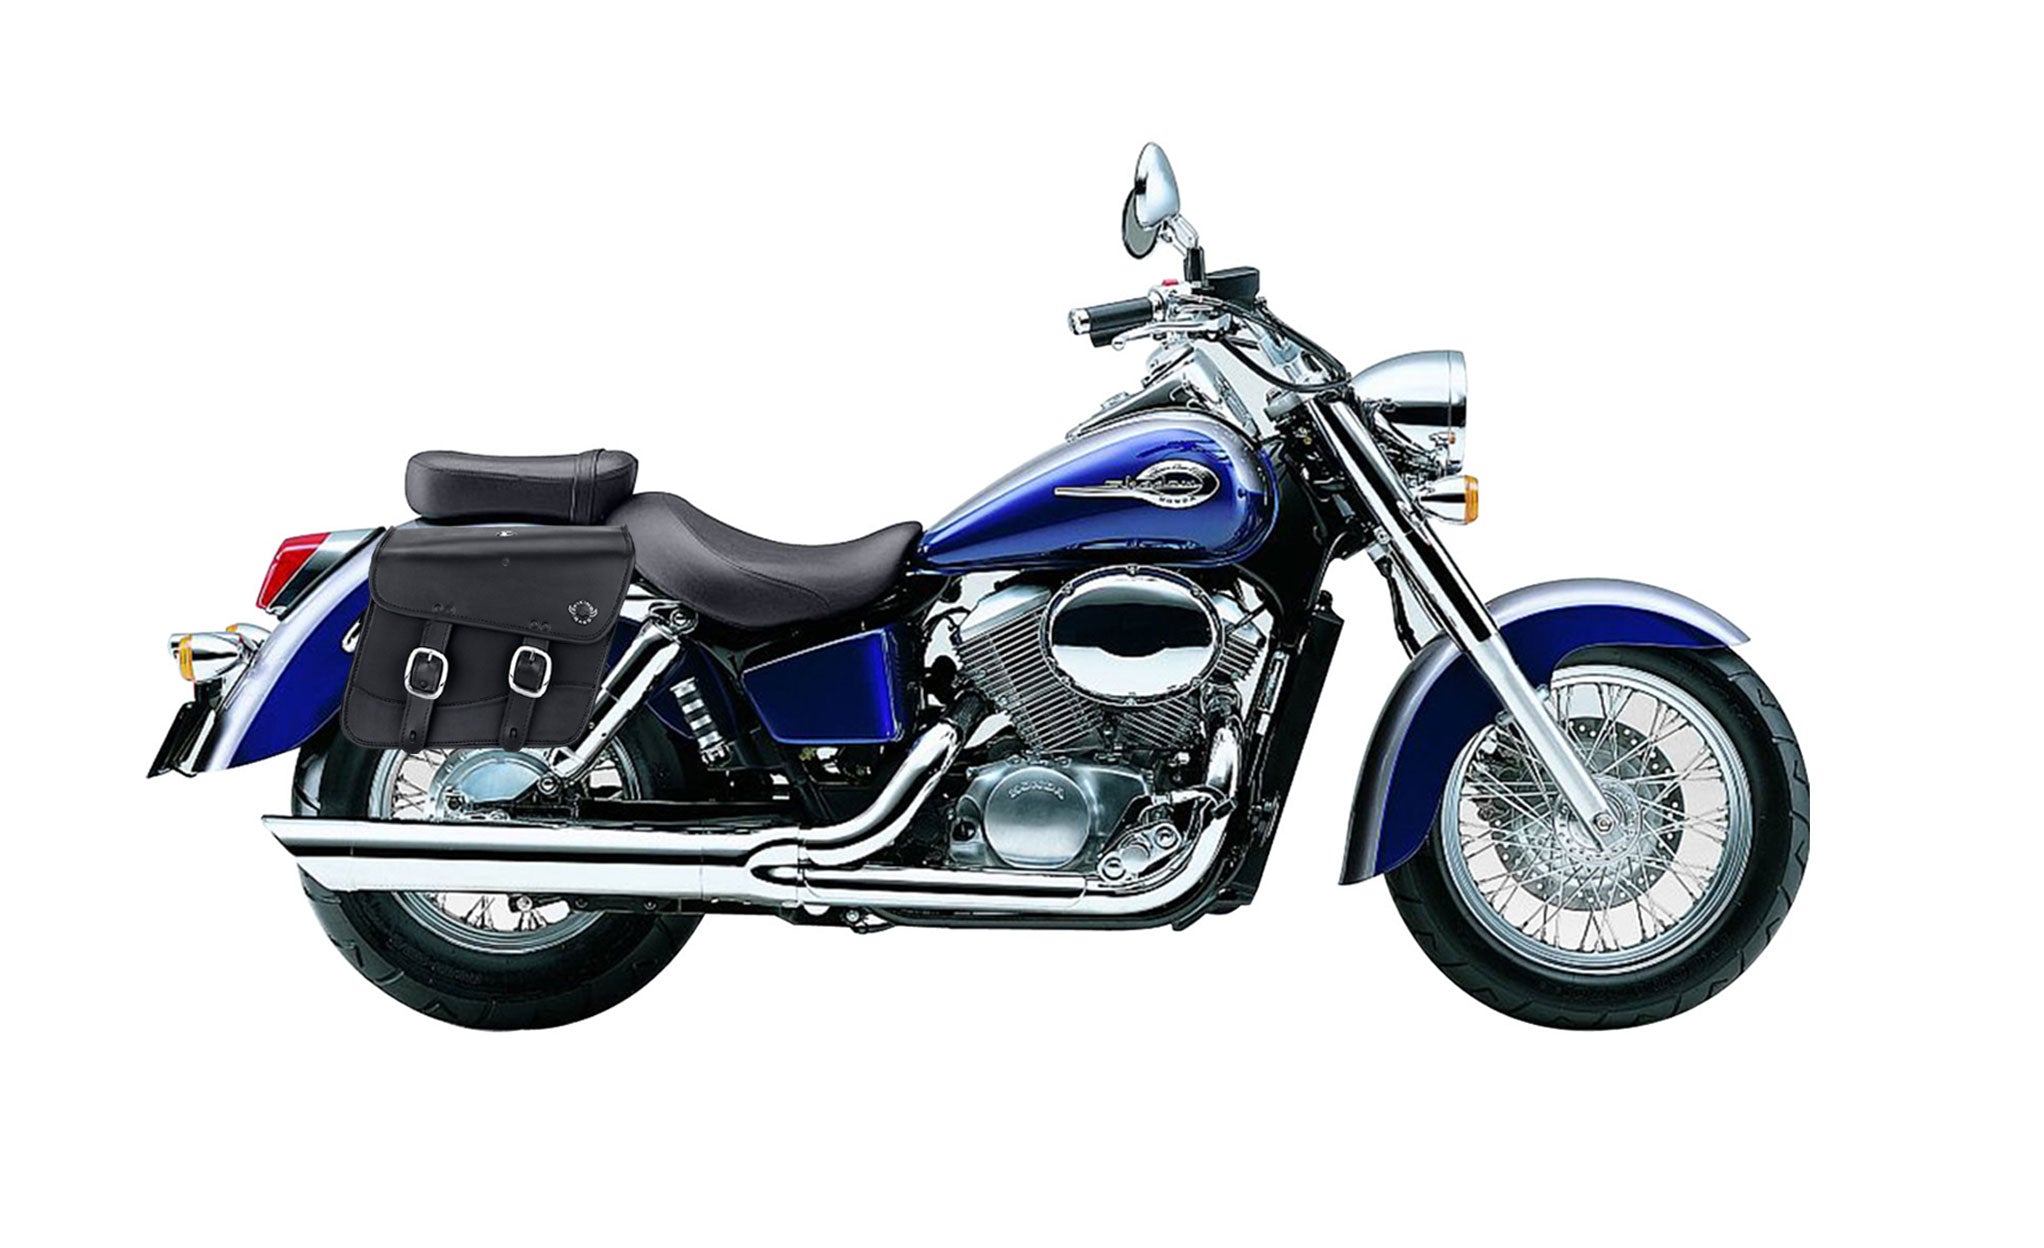 Viking Thor Medium Honda Shadow 750 Ace Leather Motorcycle Saddlebags on Bike Photo @expand